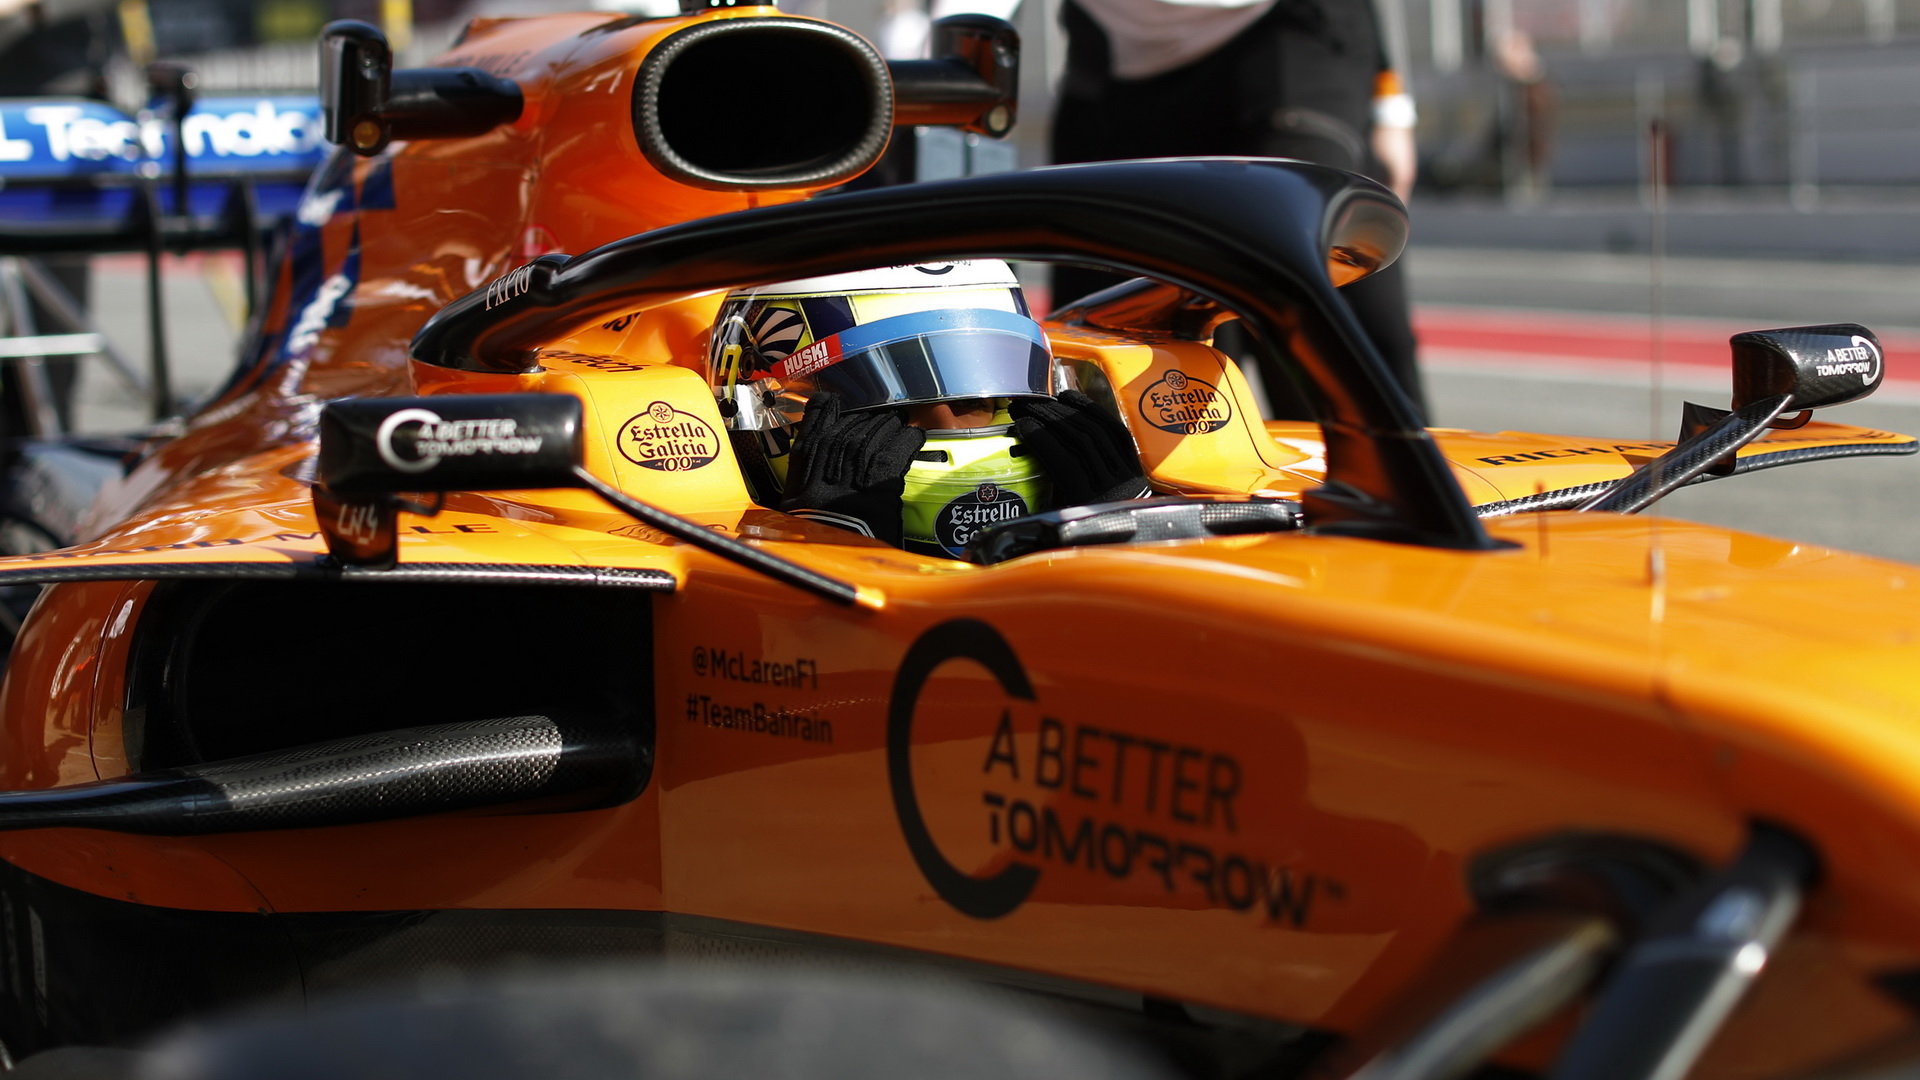 Lanco Norris ve voze McLaren MCL34 - Renault při čtvrtém dnu testů v Barceloně